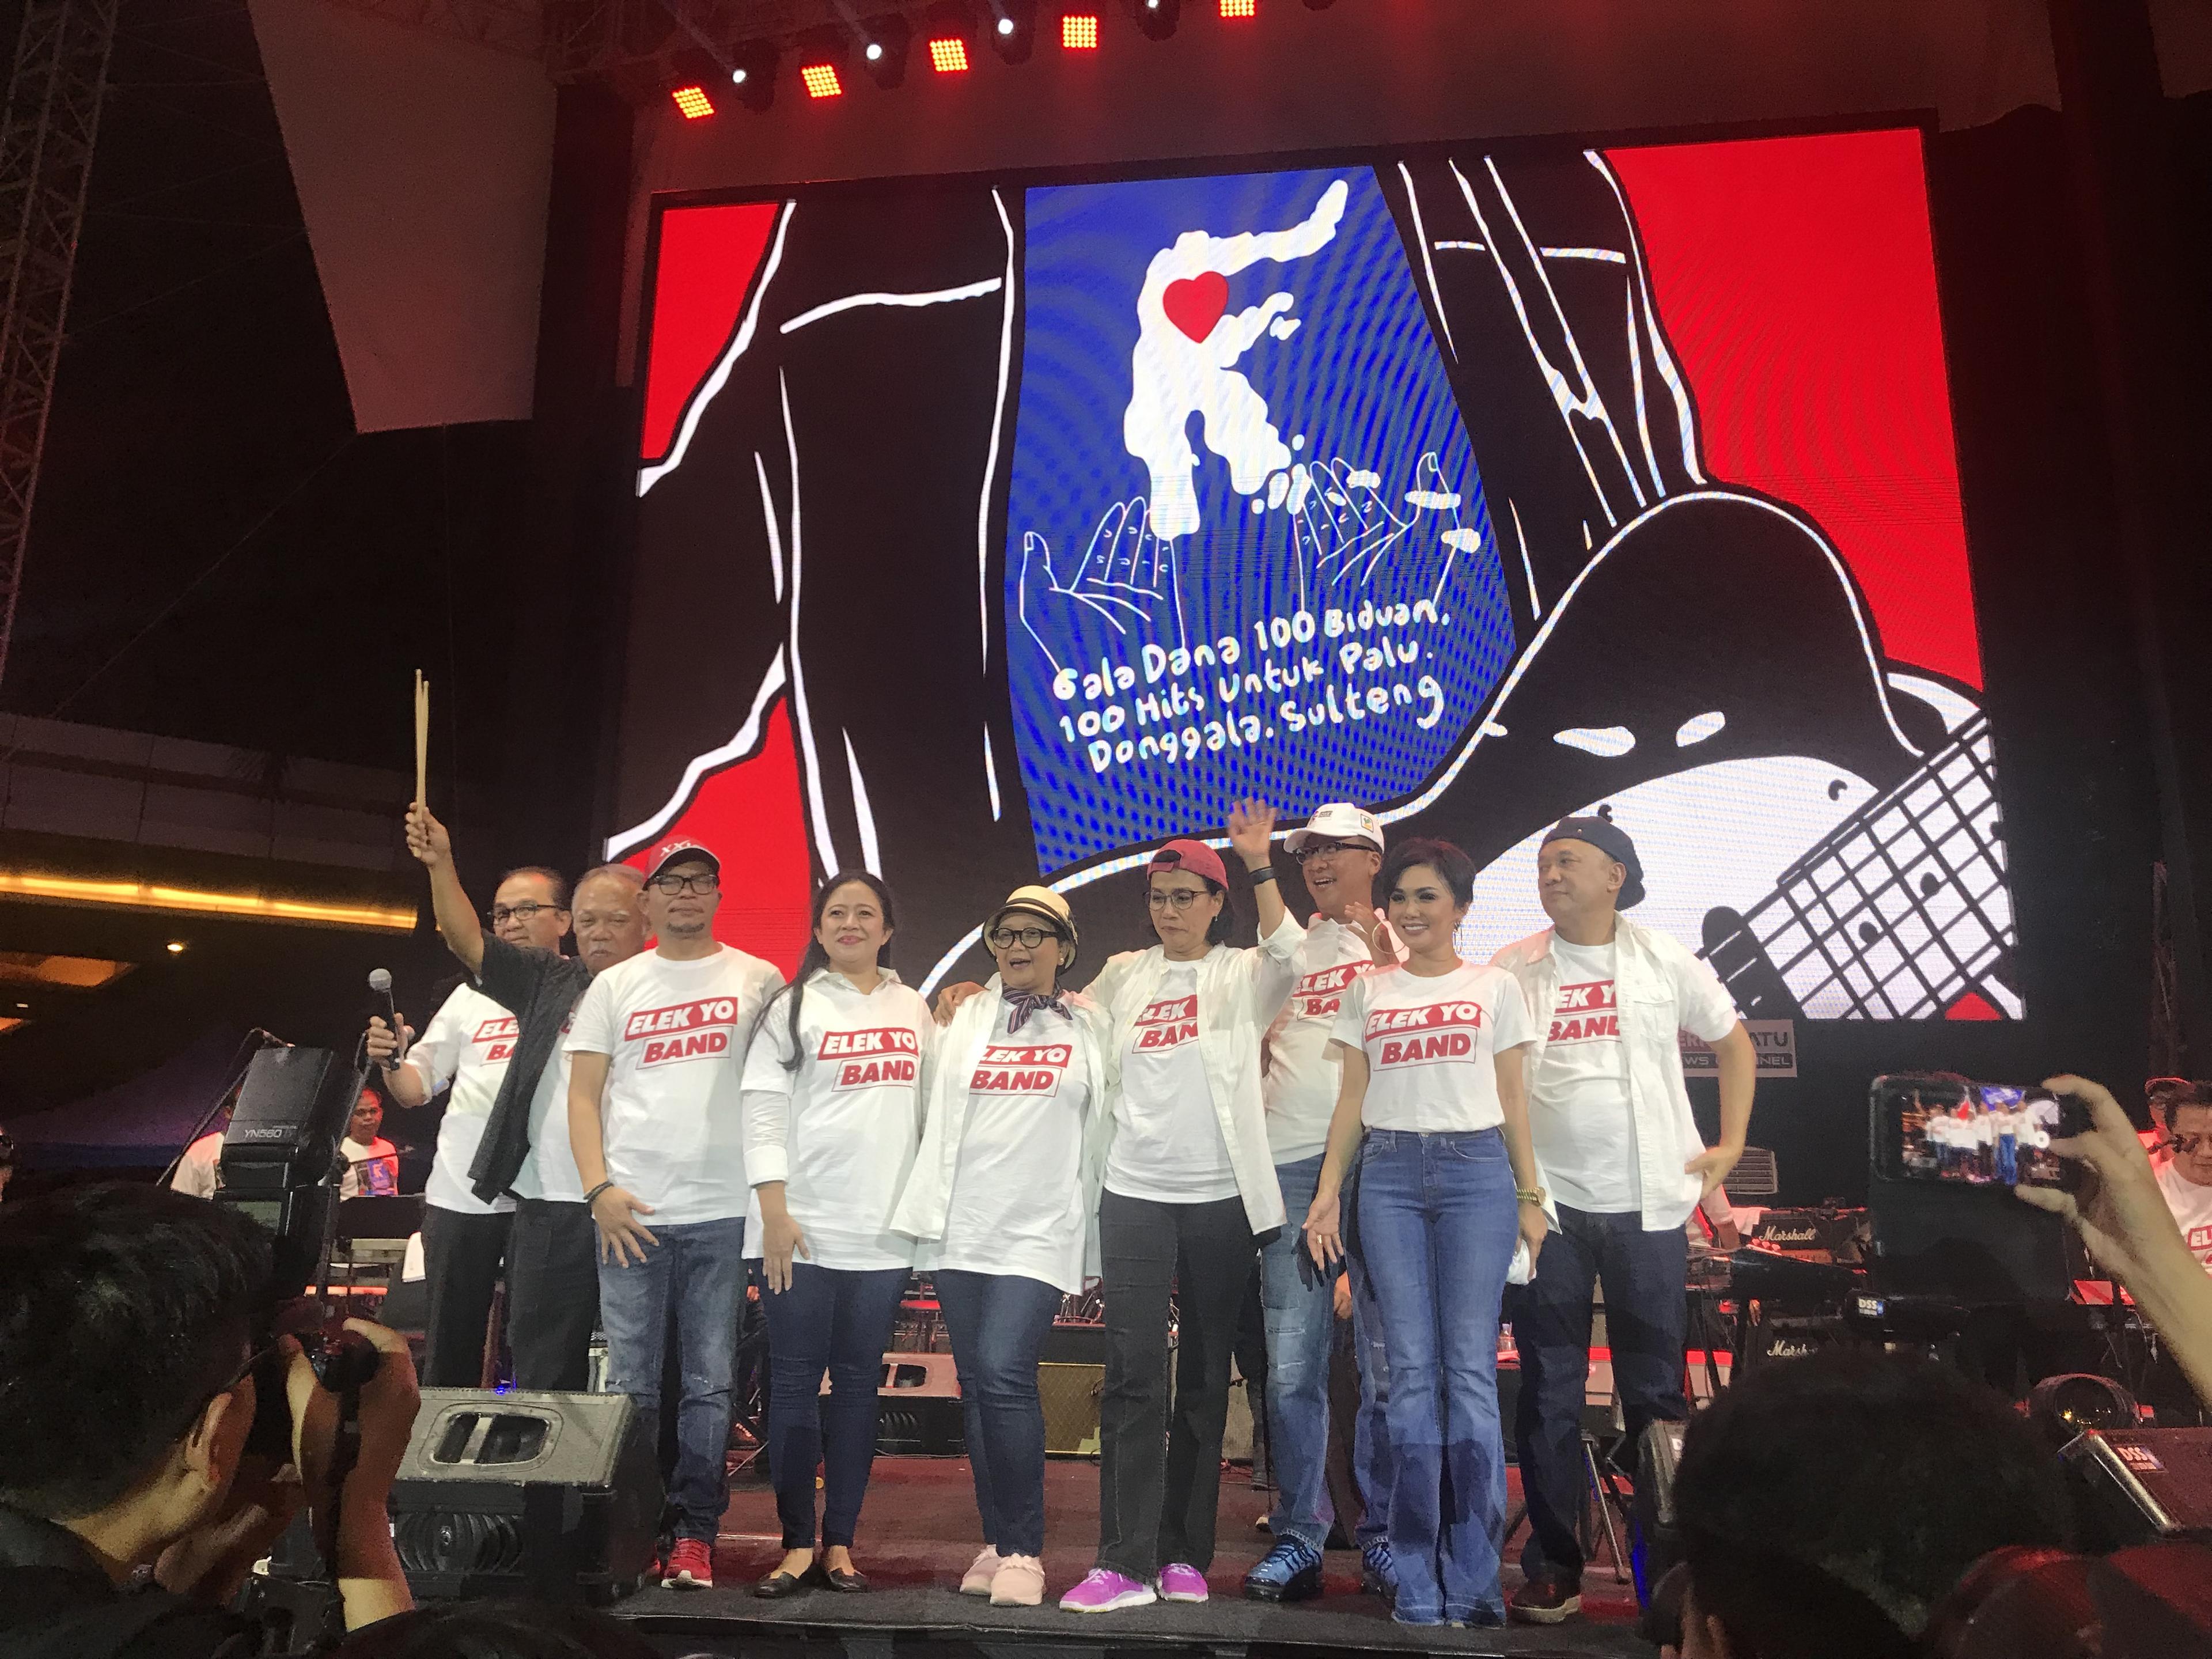 Terbang dari Palu ke Jakarta, Menteri Basuki Mendarat untuk Konser Amal